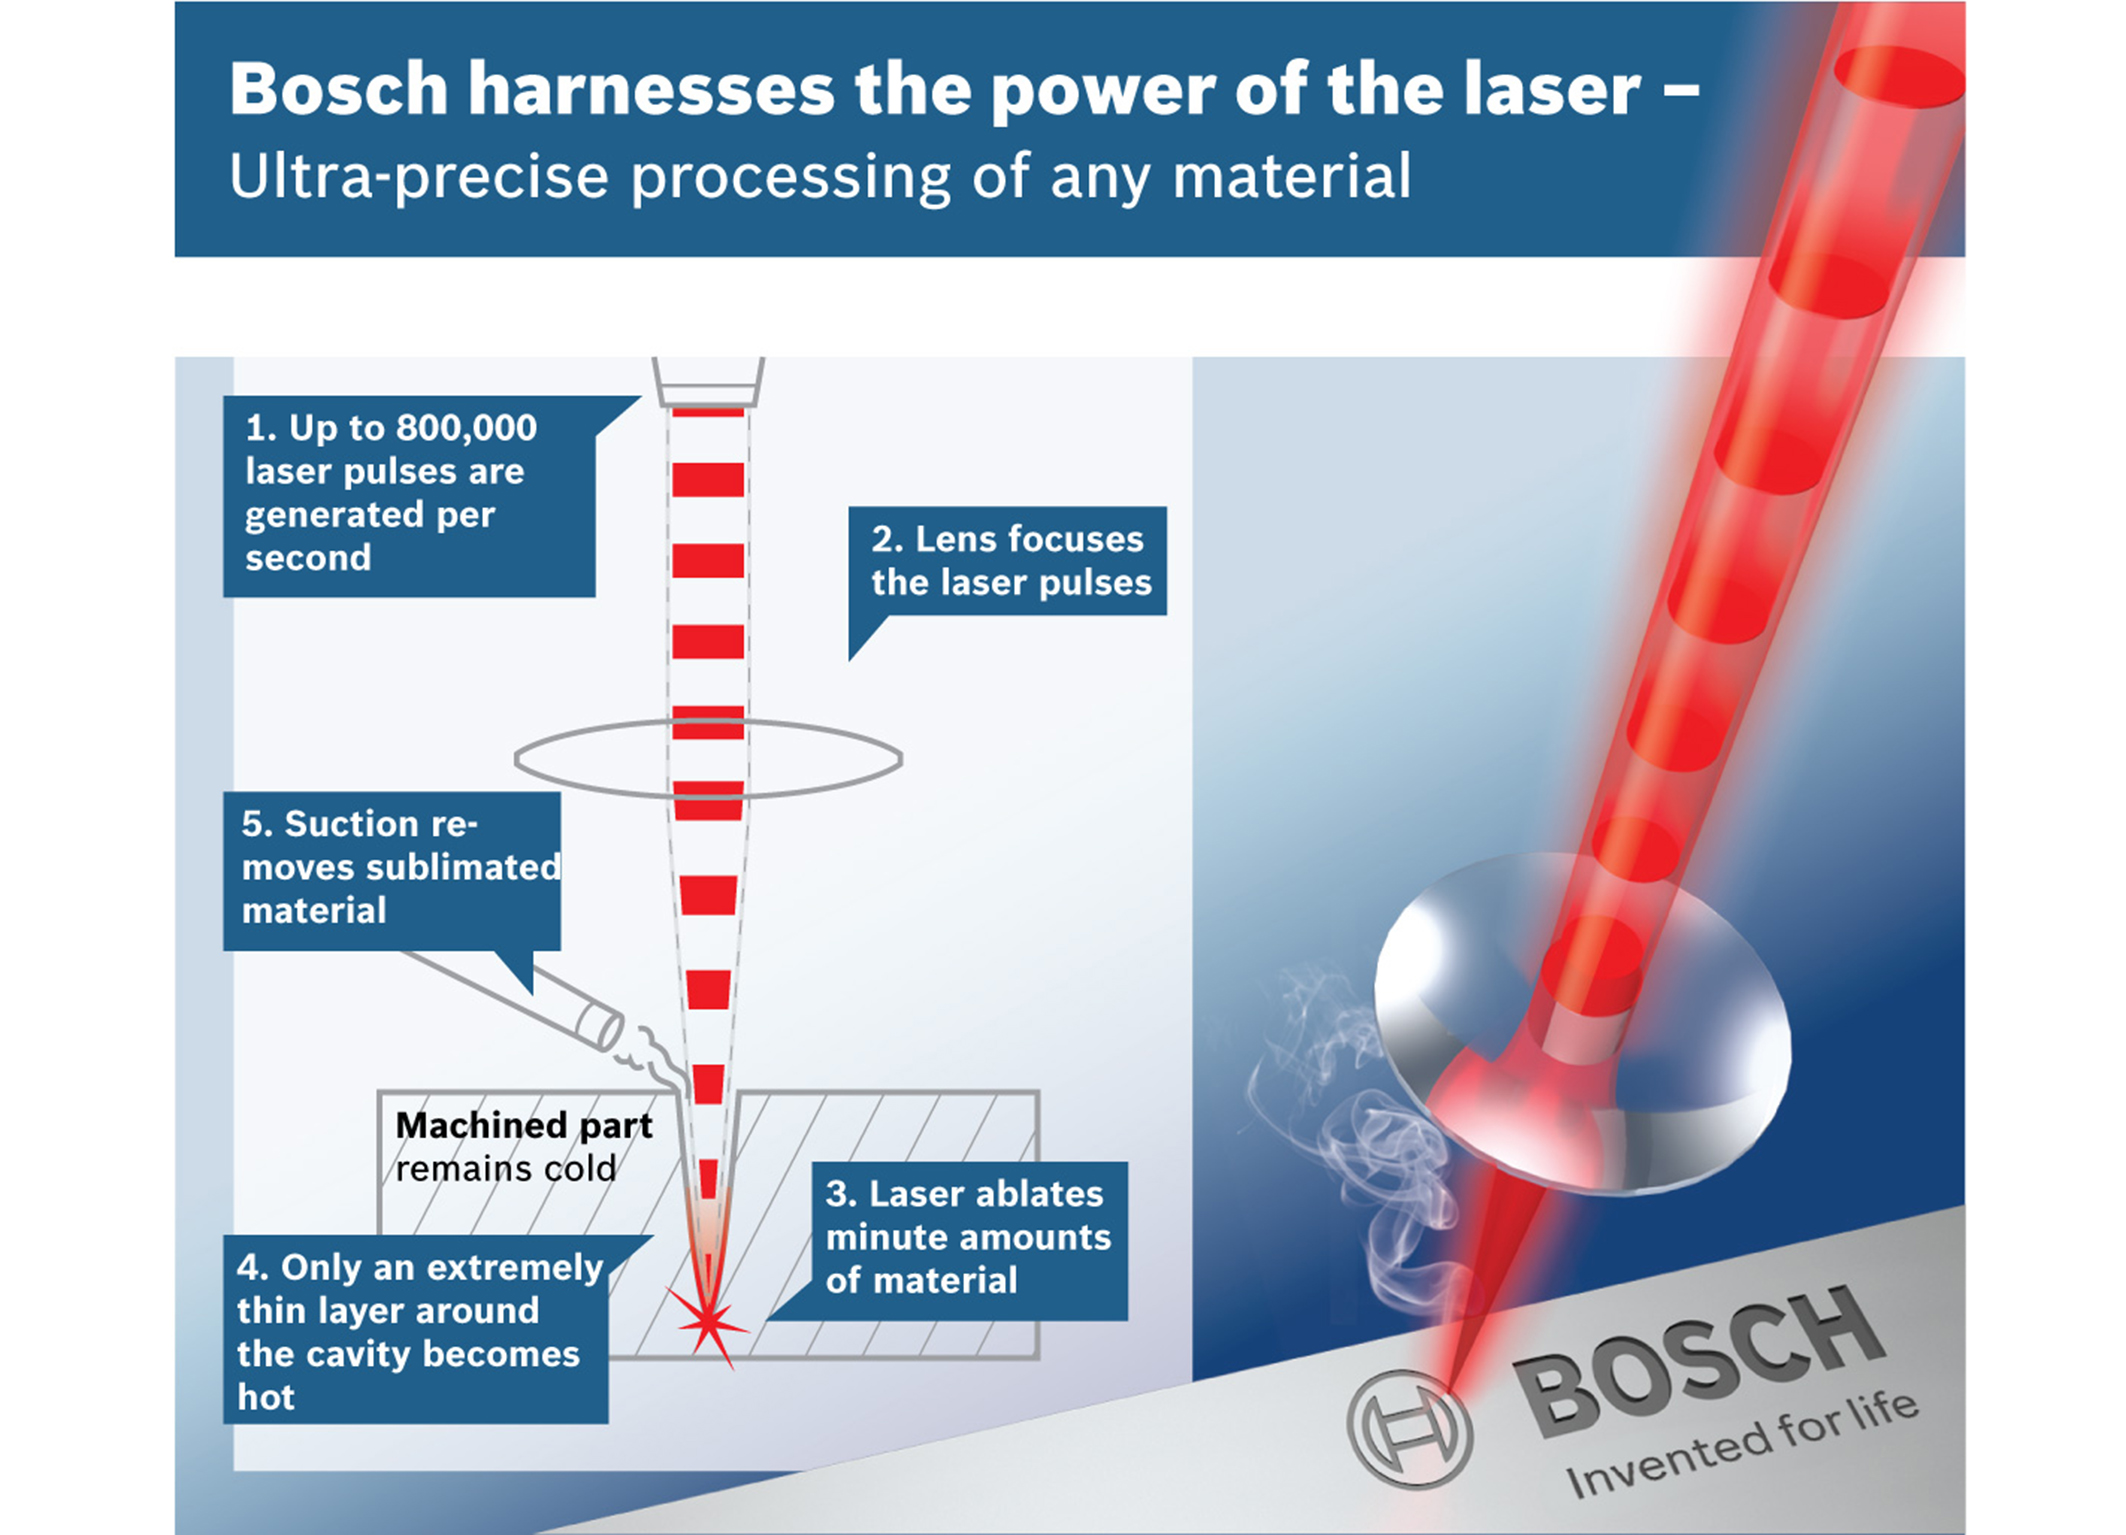 ボッシュ トルンプ イエナ大学の成功 ドイツ連邦大統領賞の未来賞にノミネート ボッシュがレーザーパワーを制御 ボッシュのプレスリリース